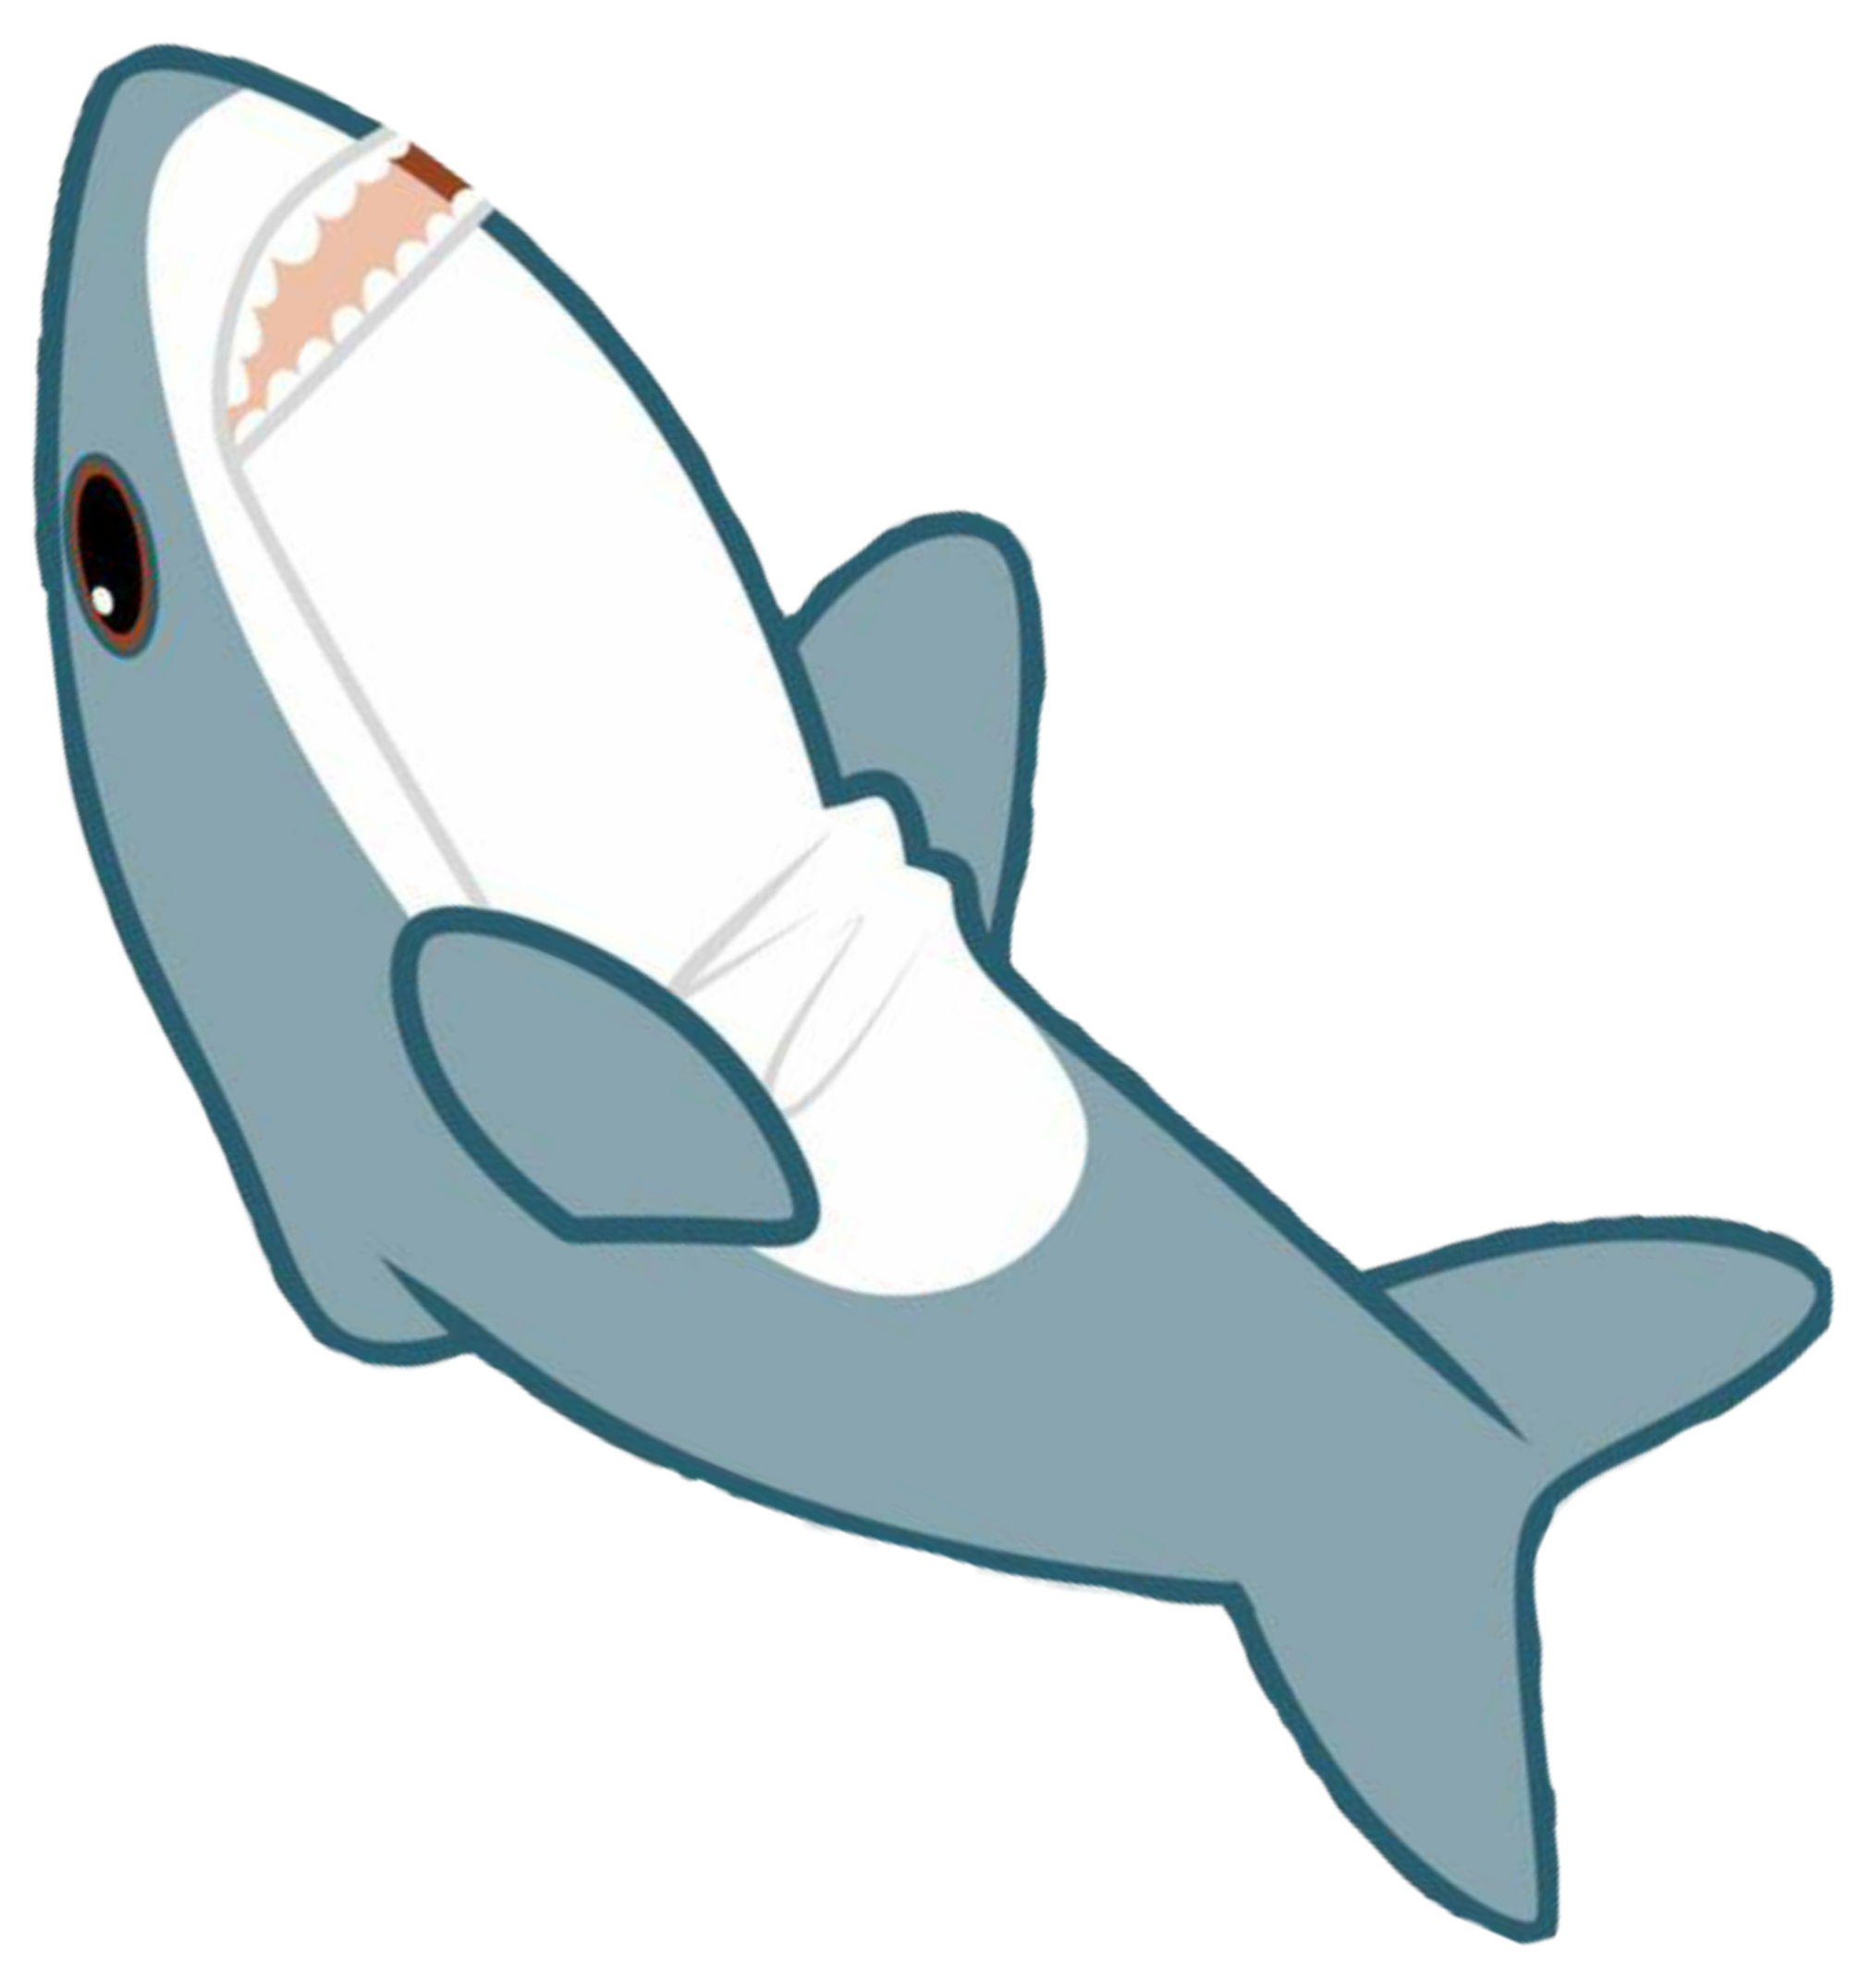 Игрушечная акула рисунок